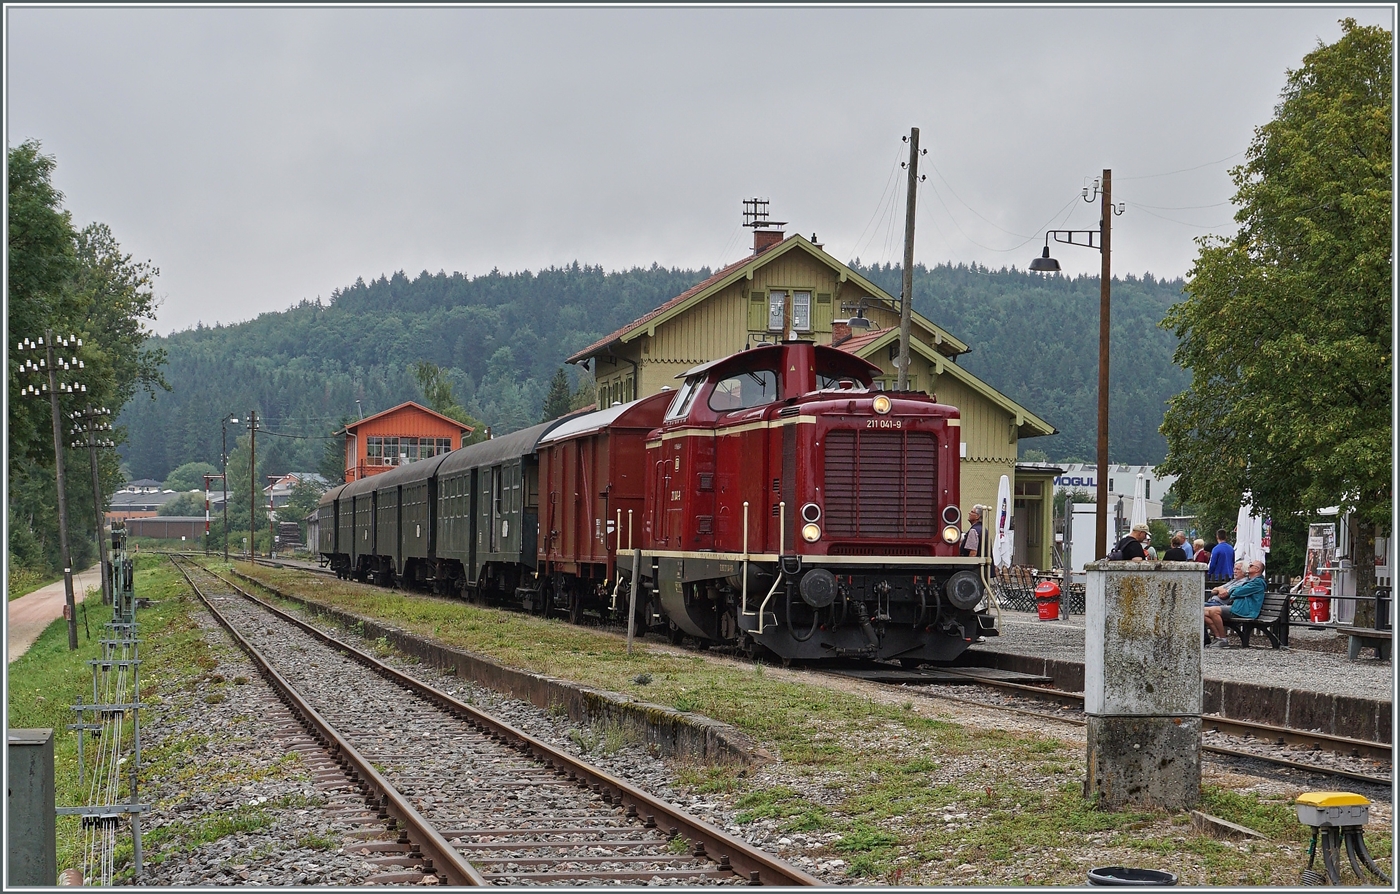 Die Diesellok 211 041-9 (92 80 1211 041-9 D-NeSA) mit einem stimmigen Zug aus Umbauwagen wartet als  Morgenzug  im Bahnhof Zollhaus Blumberg auf die Abfahrt. Die Aufnahme entstand beim offenen Bahnbergang.

27. August 2022